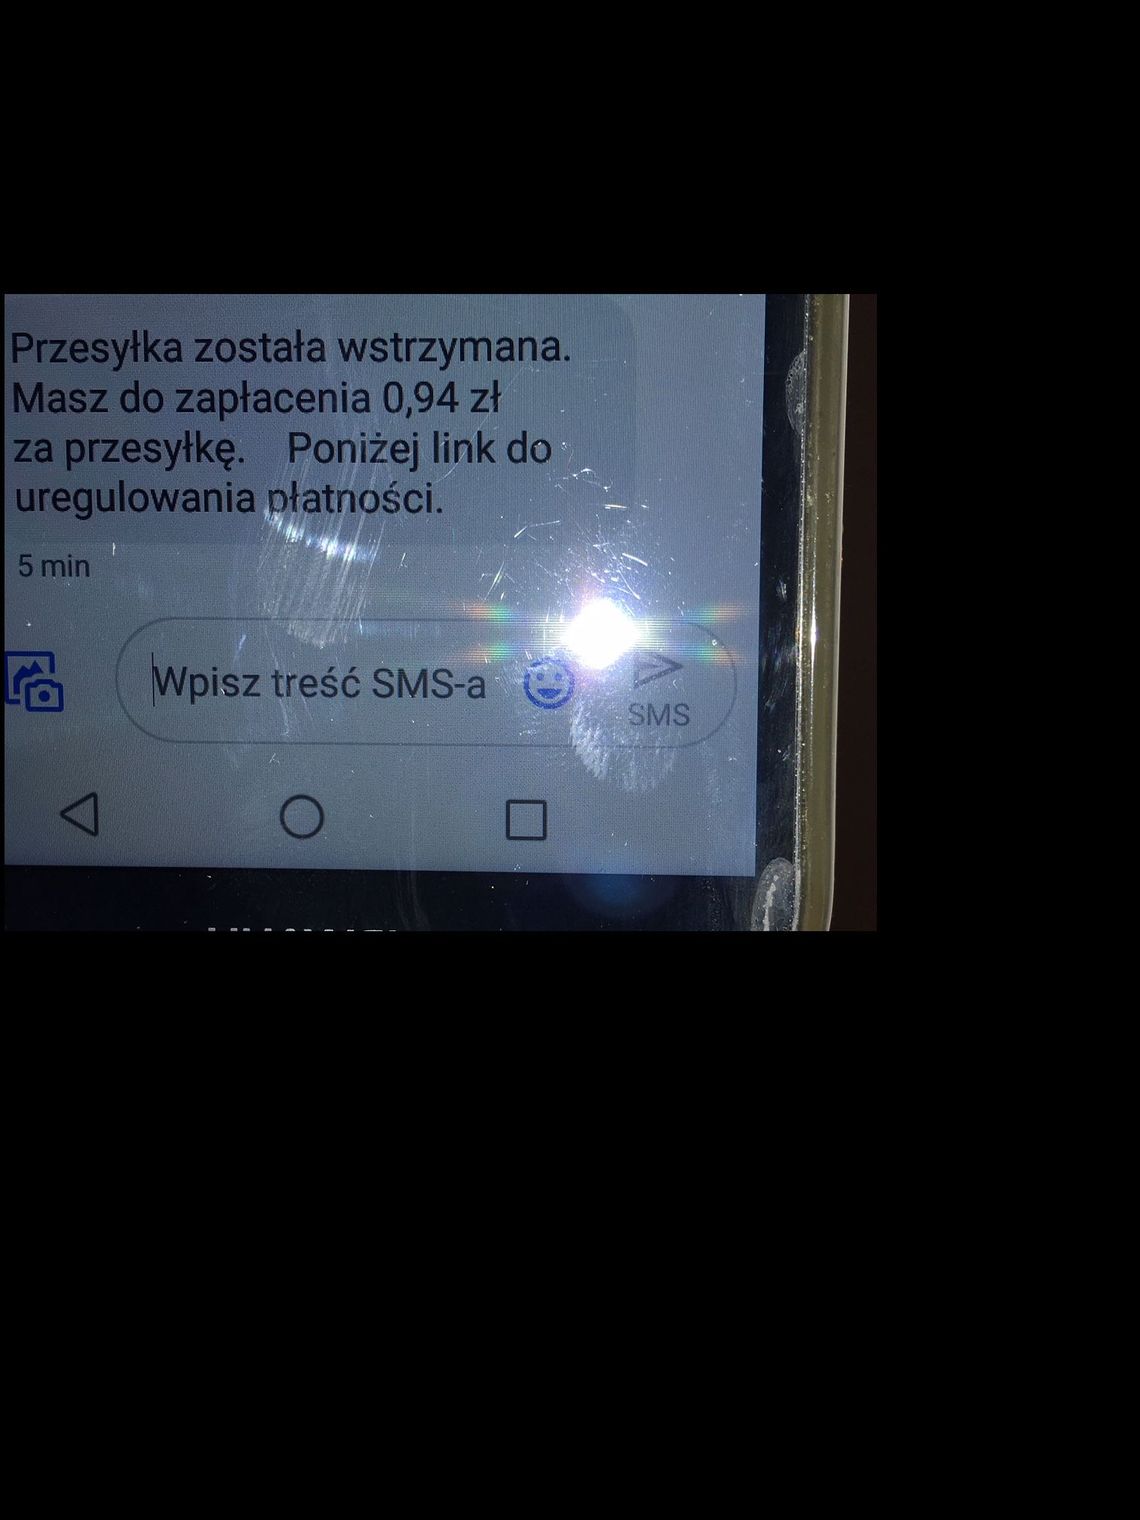 Mieszkanka Kwidzyna straciła ponad 5 tys. zł przez fałszywy SMS zawierający link do dokonania płatności